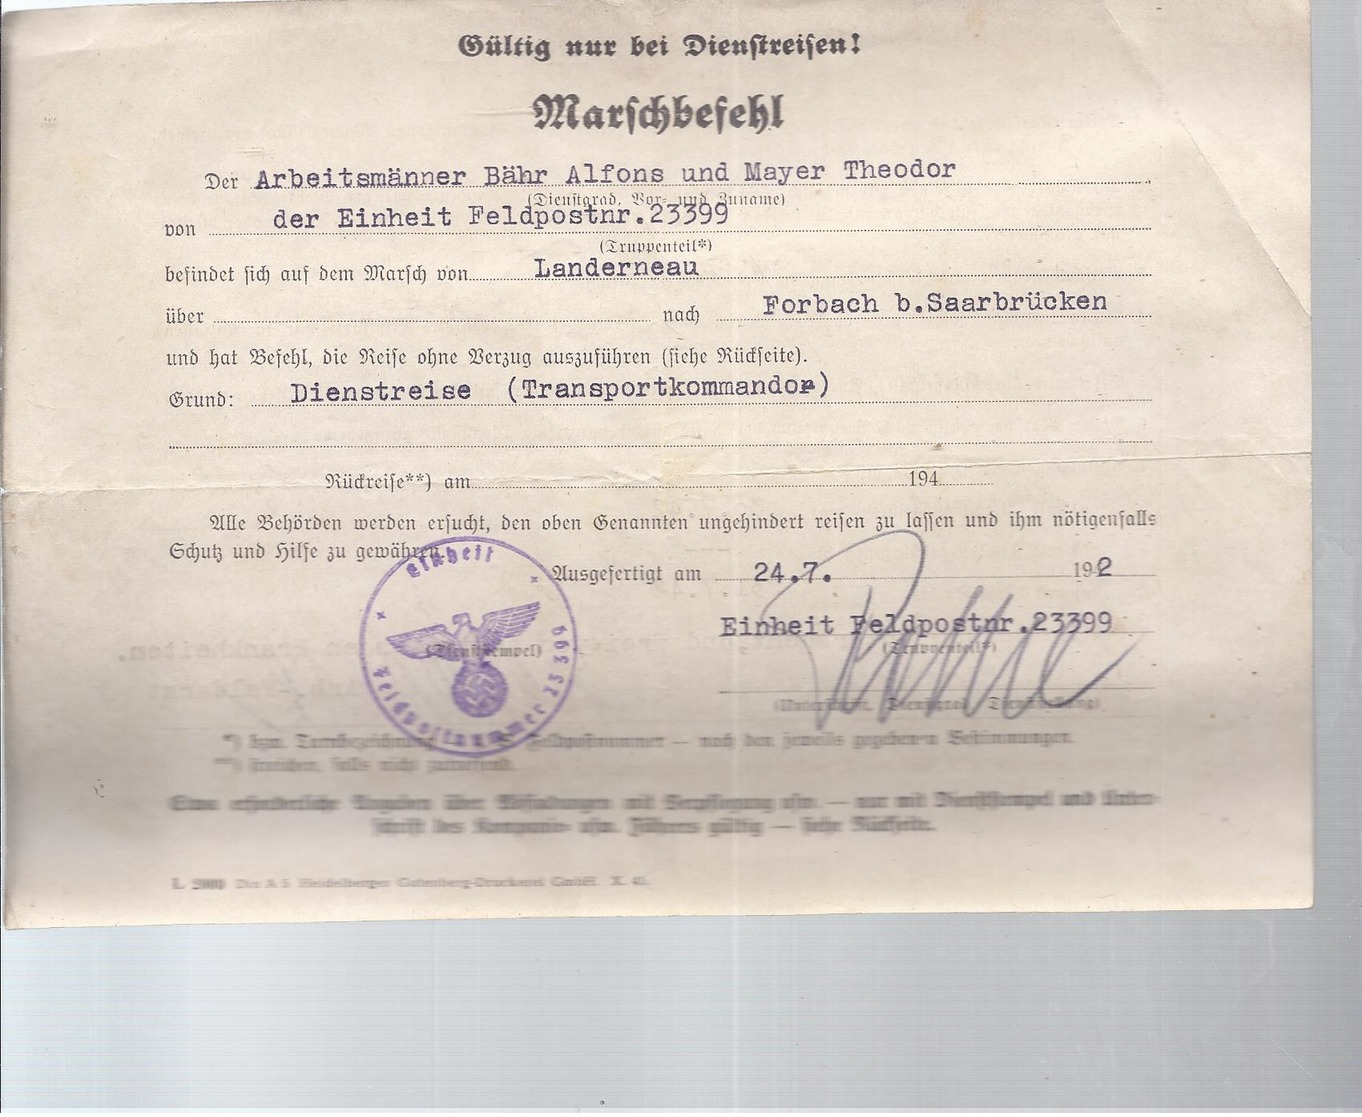 AK-23880 A  -   Marschbefehl  Für Dienstreisen  24.7.1942 - Historische Dokumente